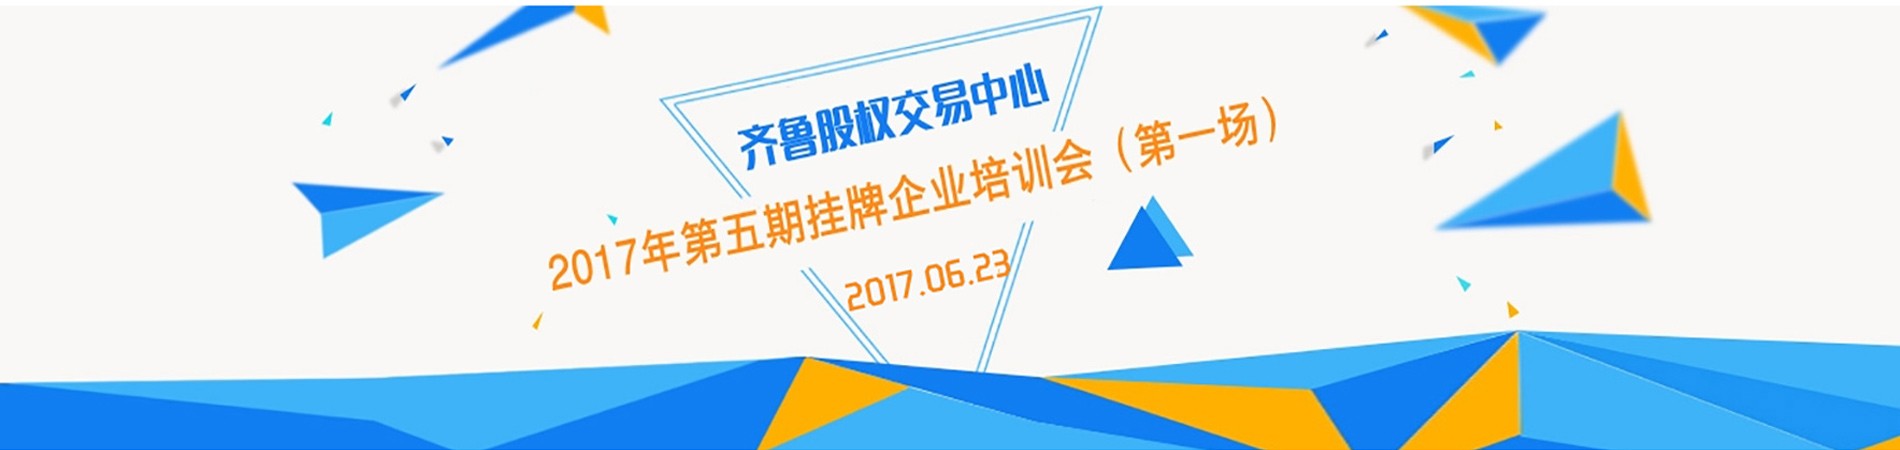 齐鲁股权交易中心2017年第五期挂牌企业培训会（第一场）